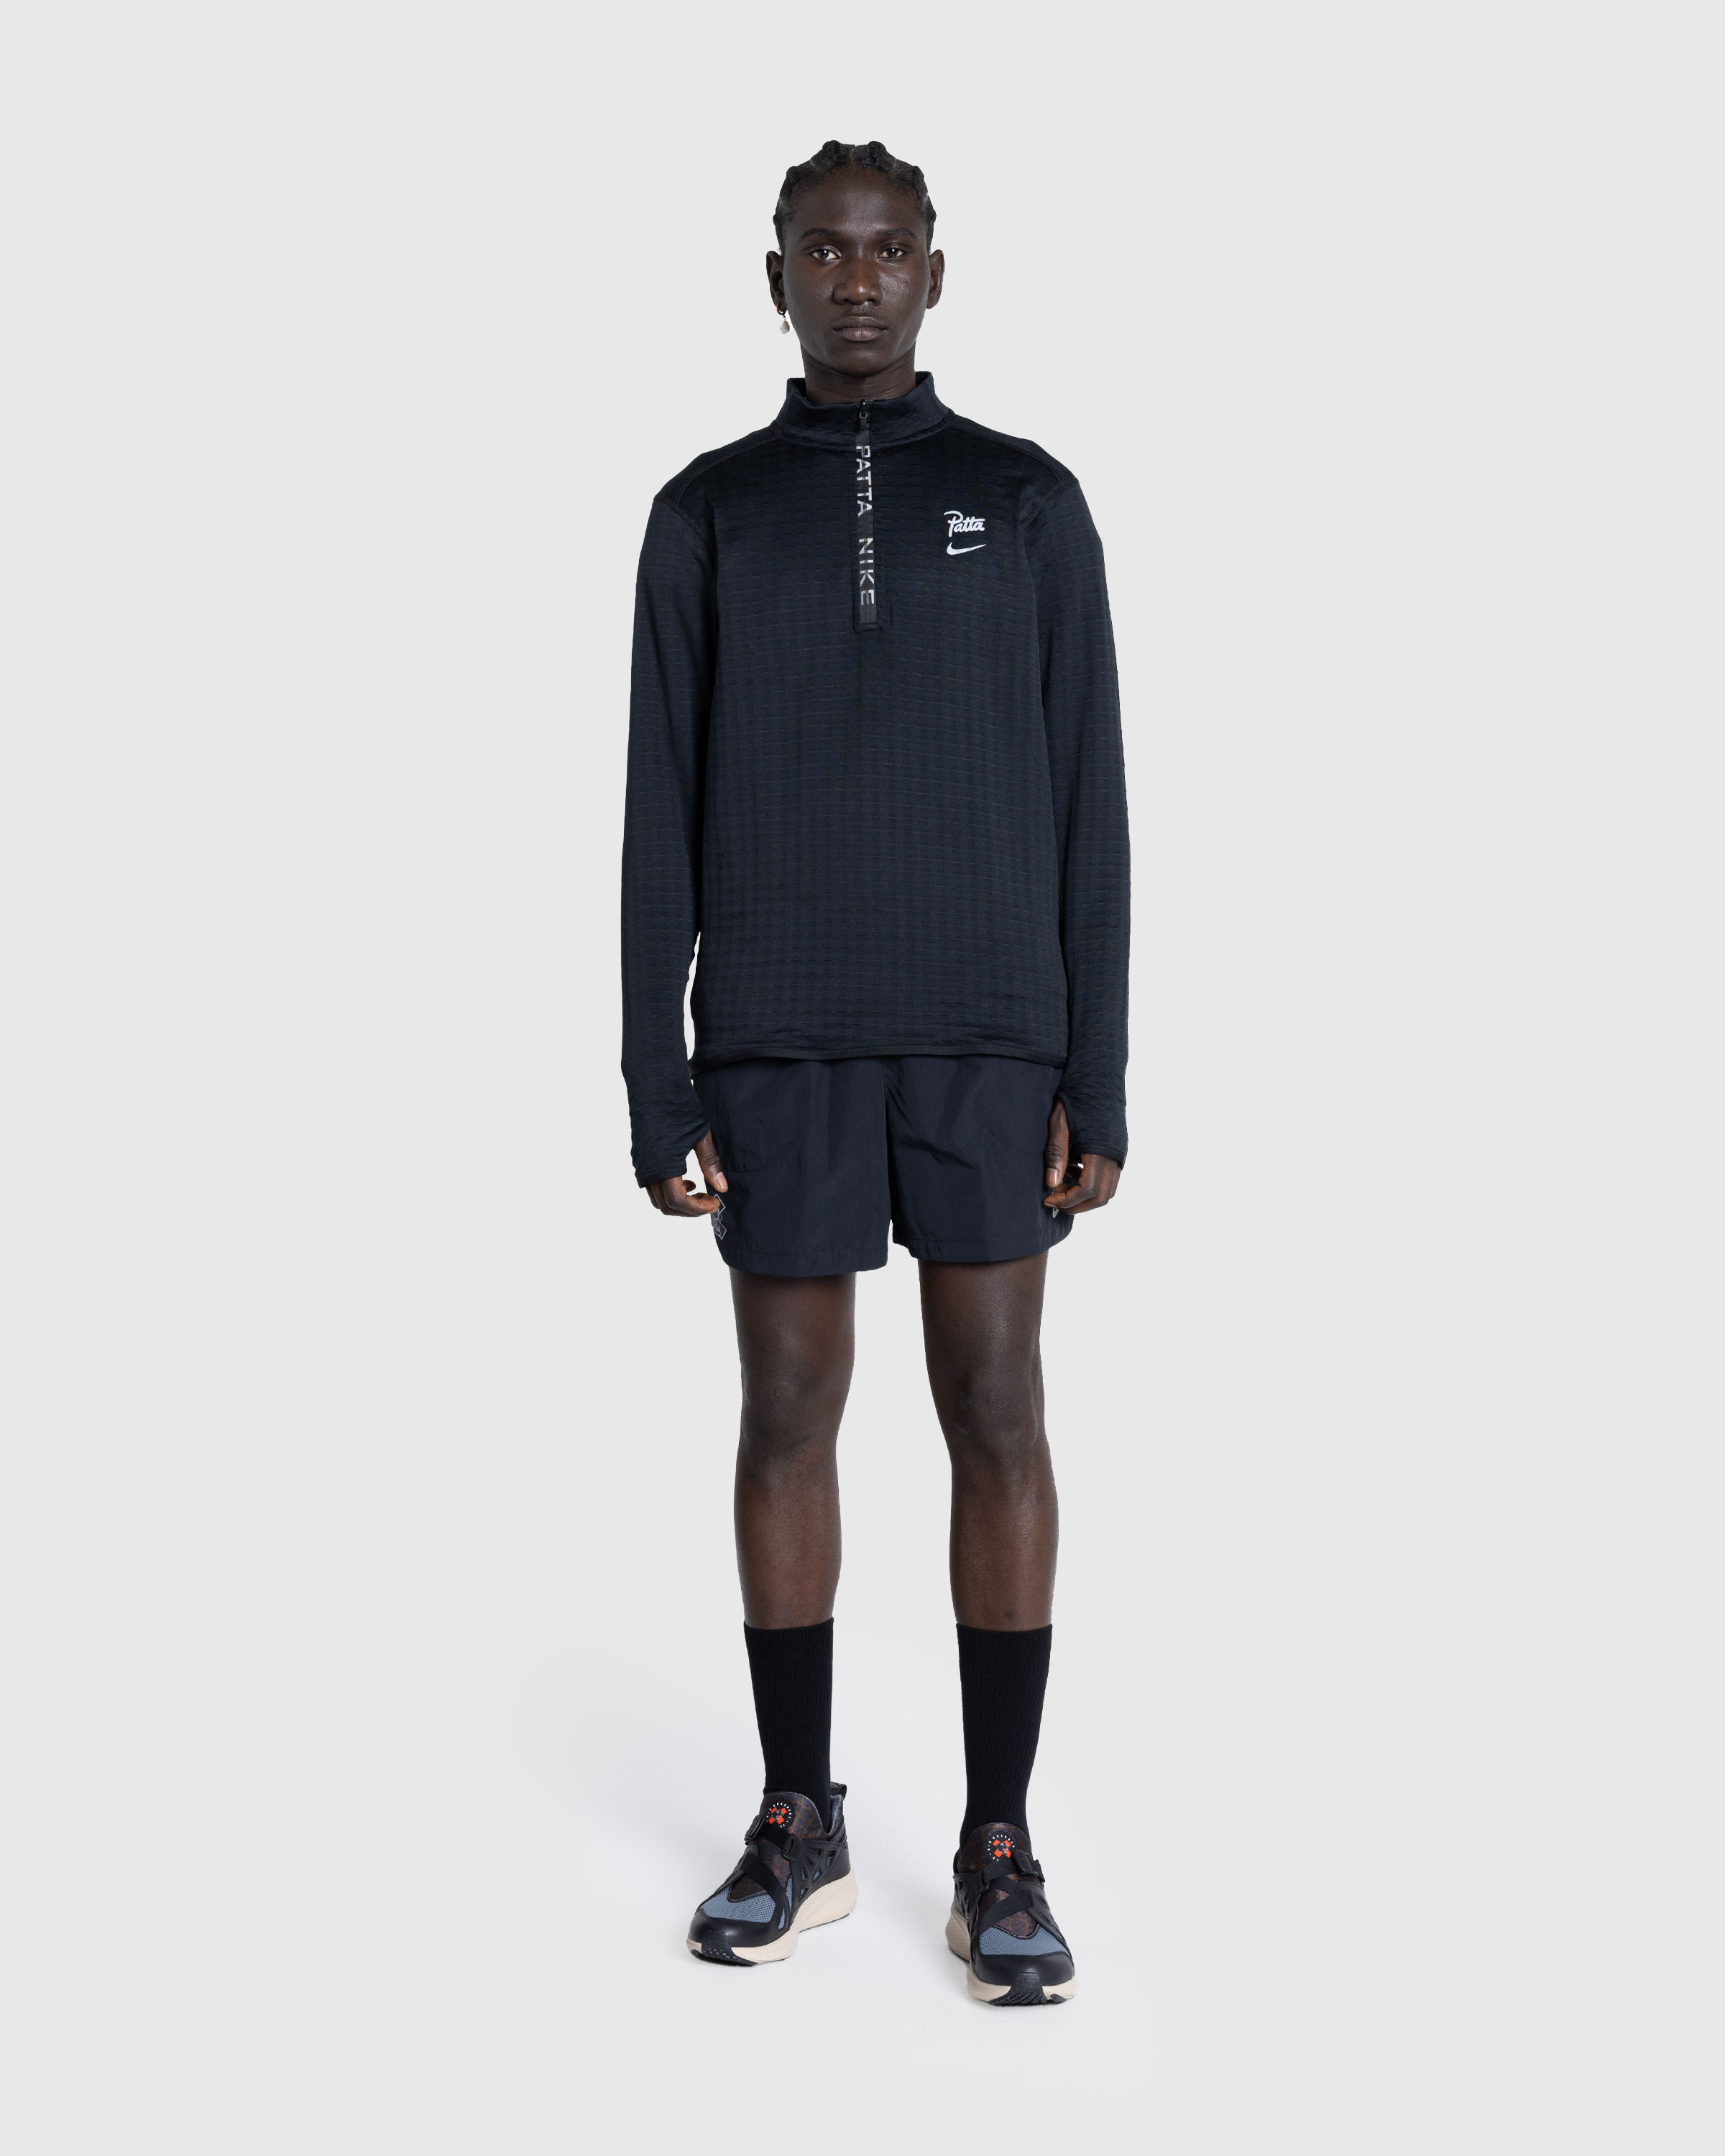 Nike x Patta – Men's Shorts Black - Active Shorts - Black - Image 3